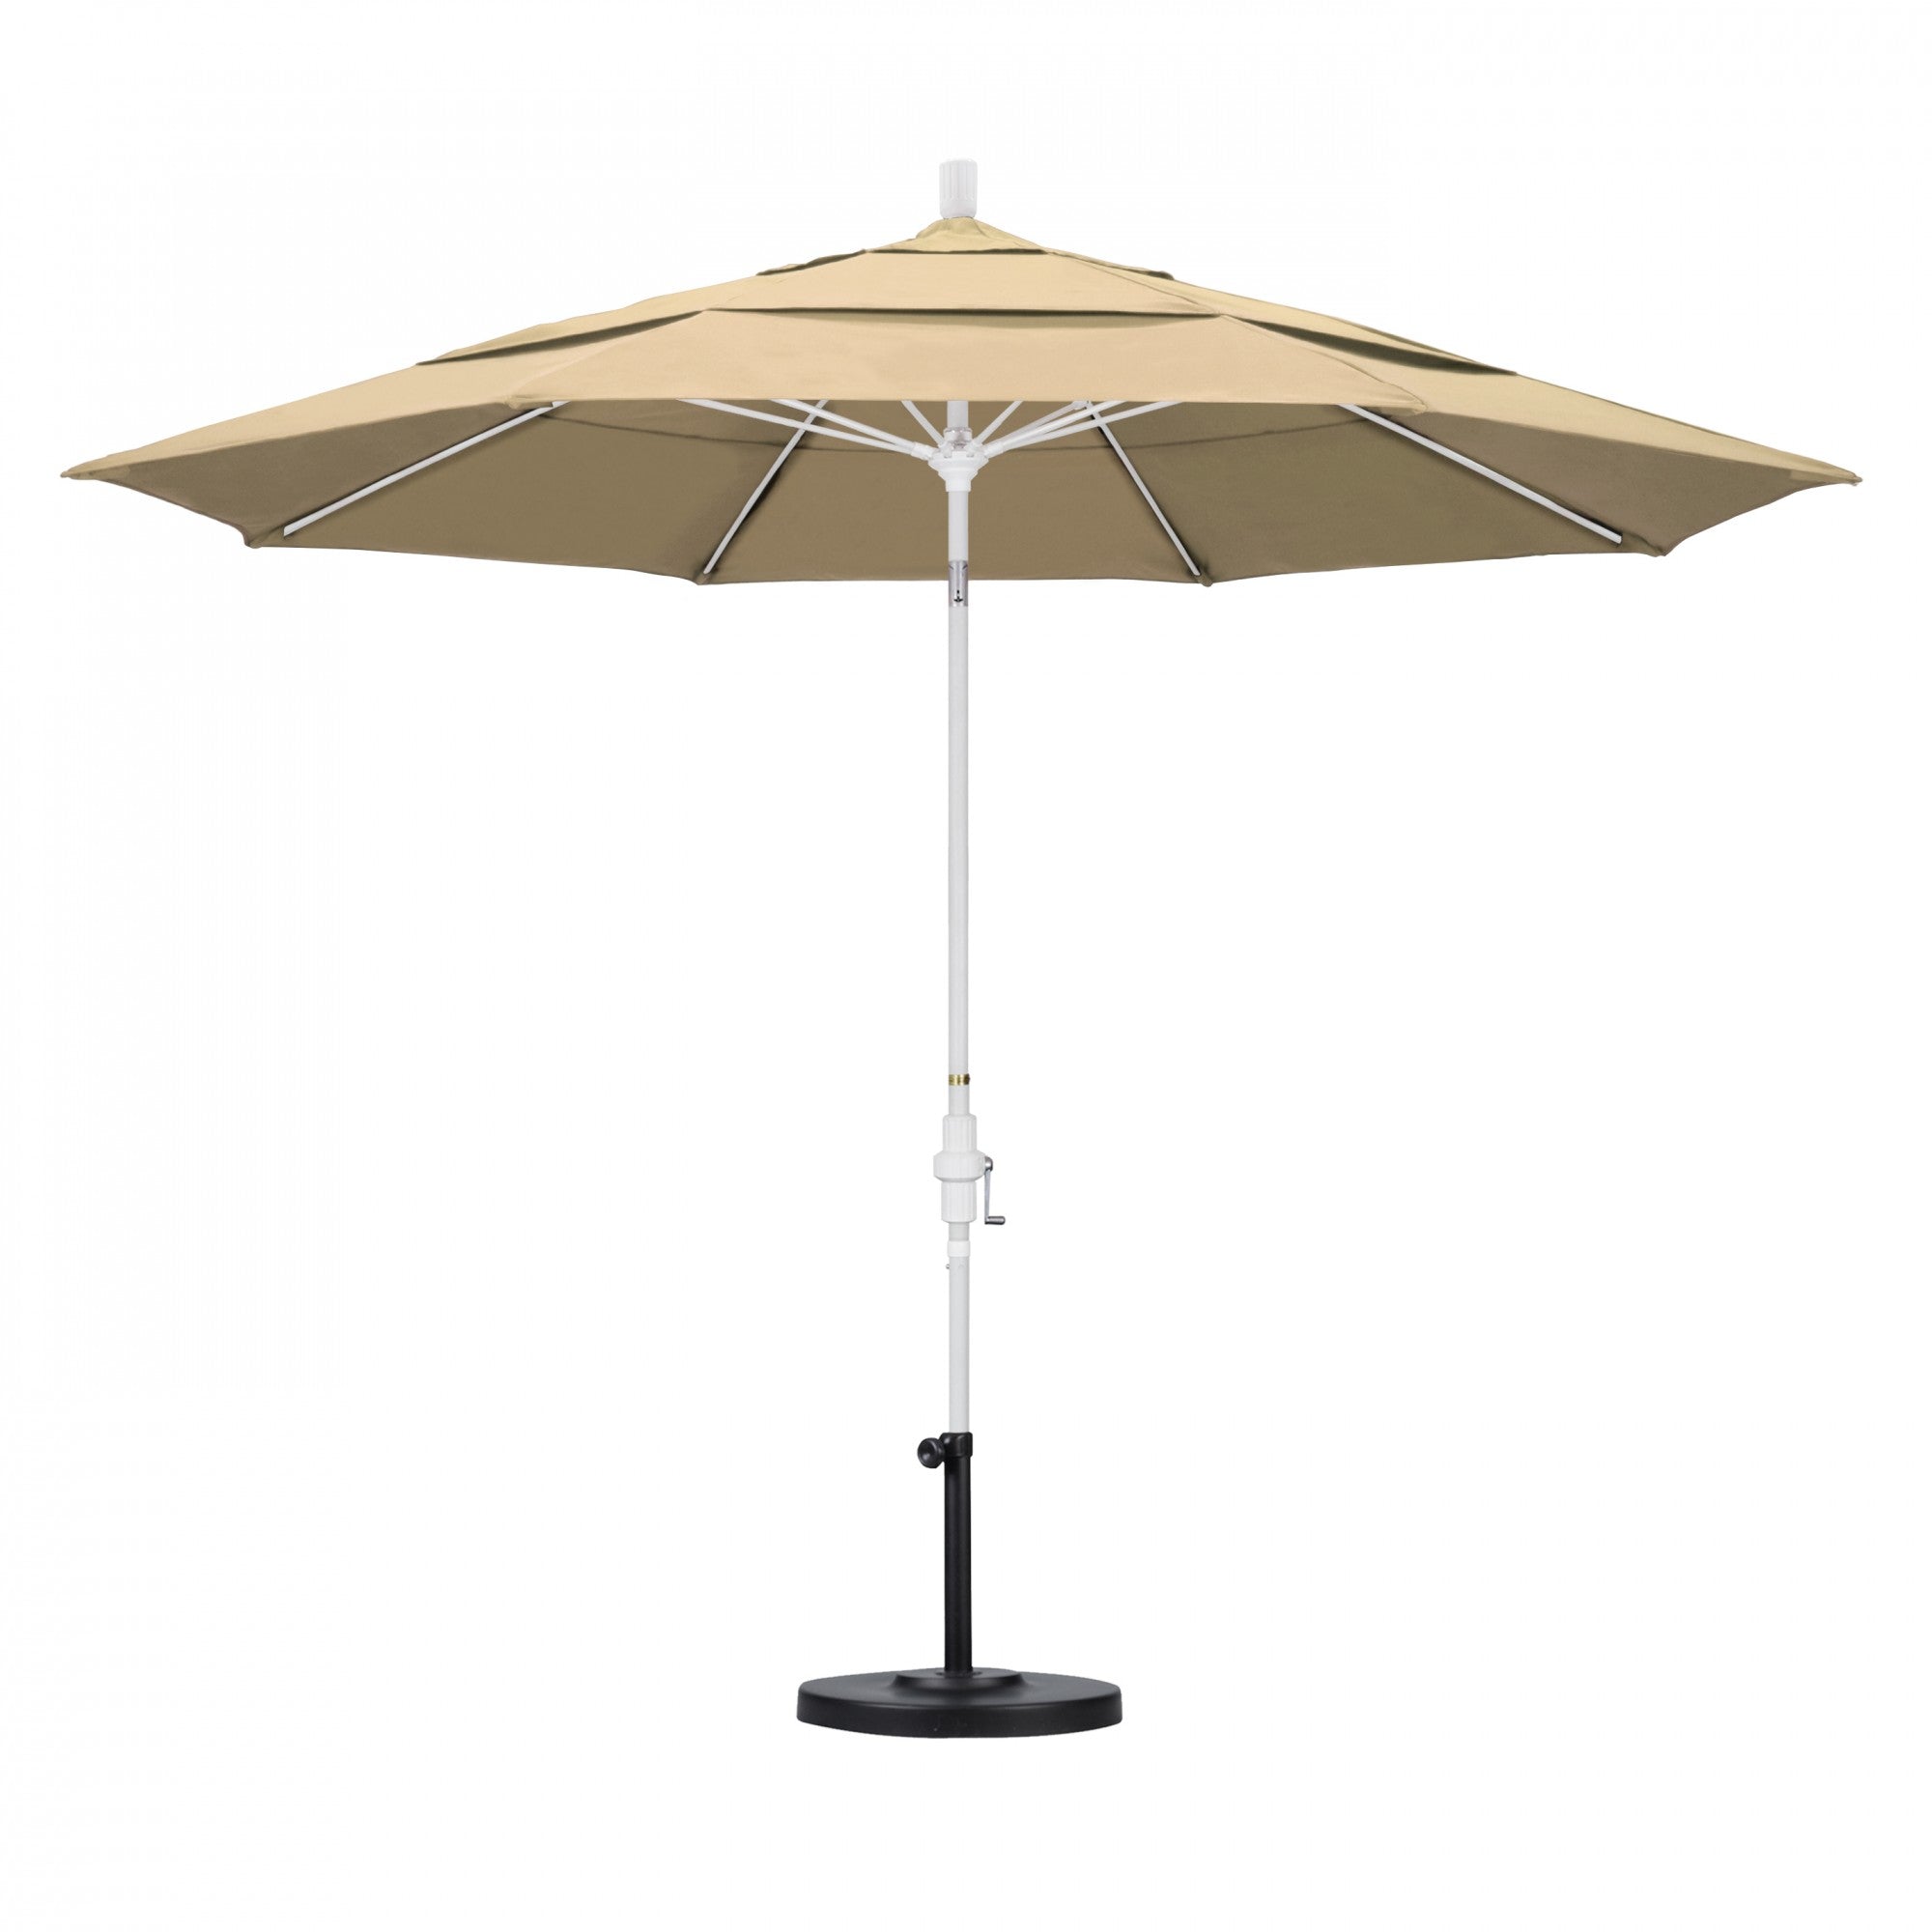 California Umbrella - 11' - Patio Umbrella Umbrella - Aluminum Pole - Antique Beige - Olefin - GSCUF118170-F22-DWV